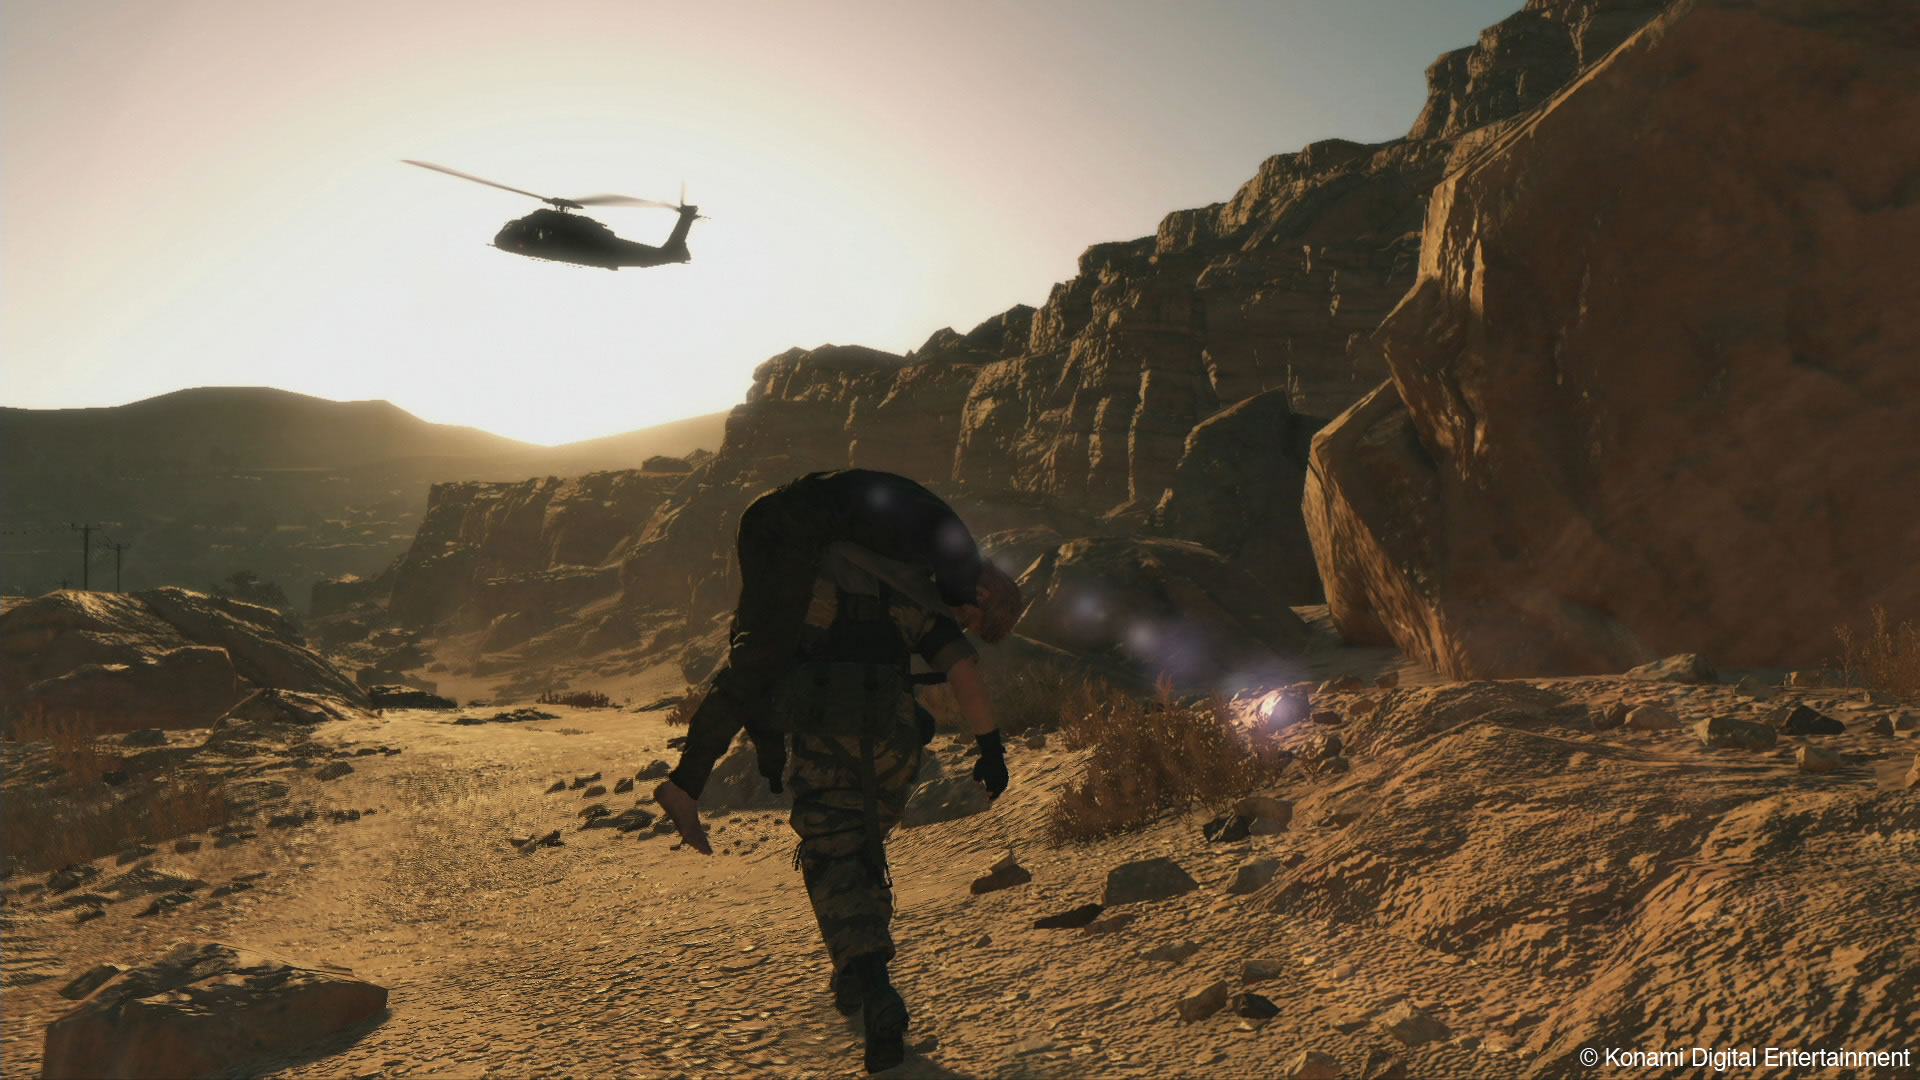 Au coeur de la technologie de Metal Gear Solid V - Julien Merceron